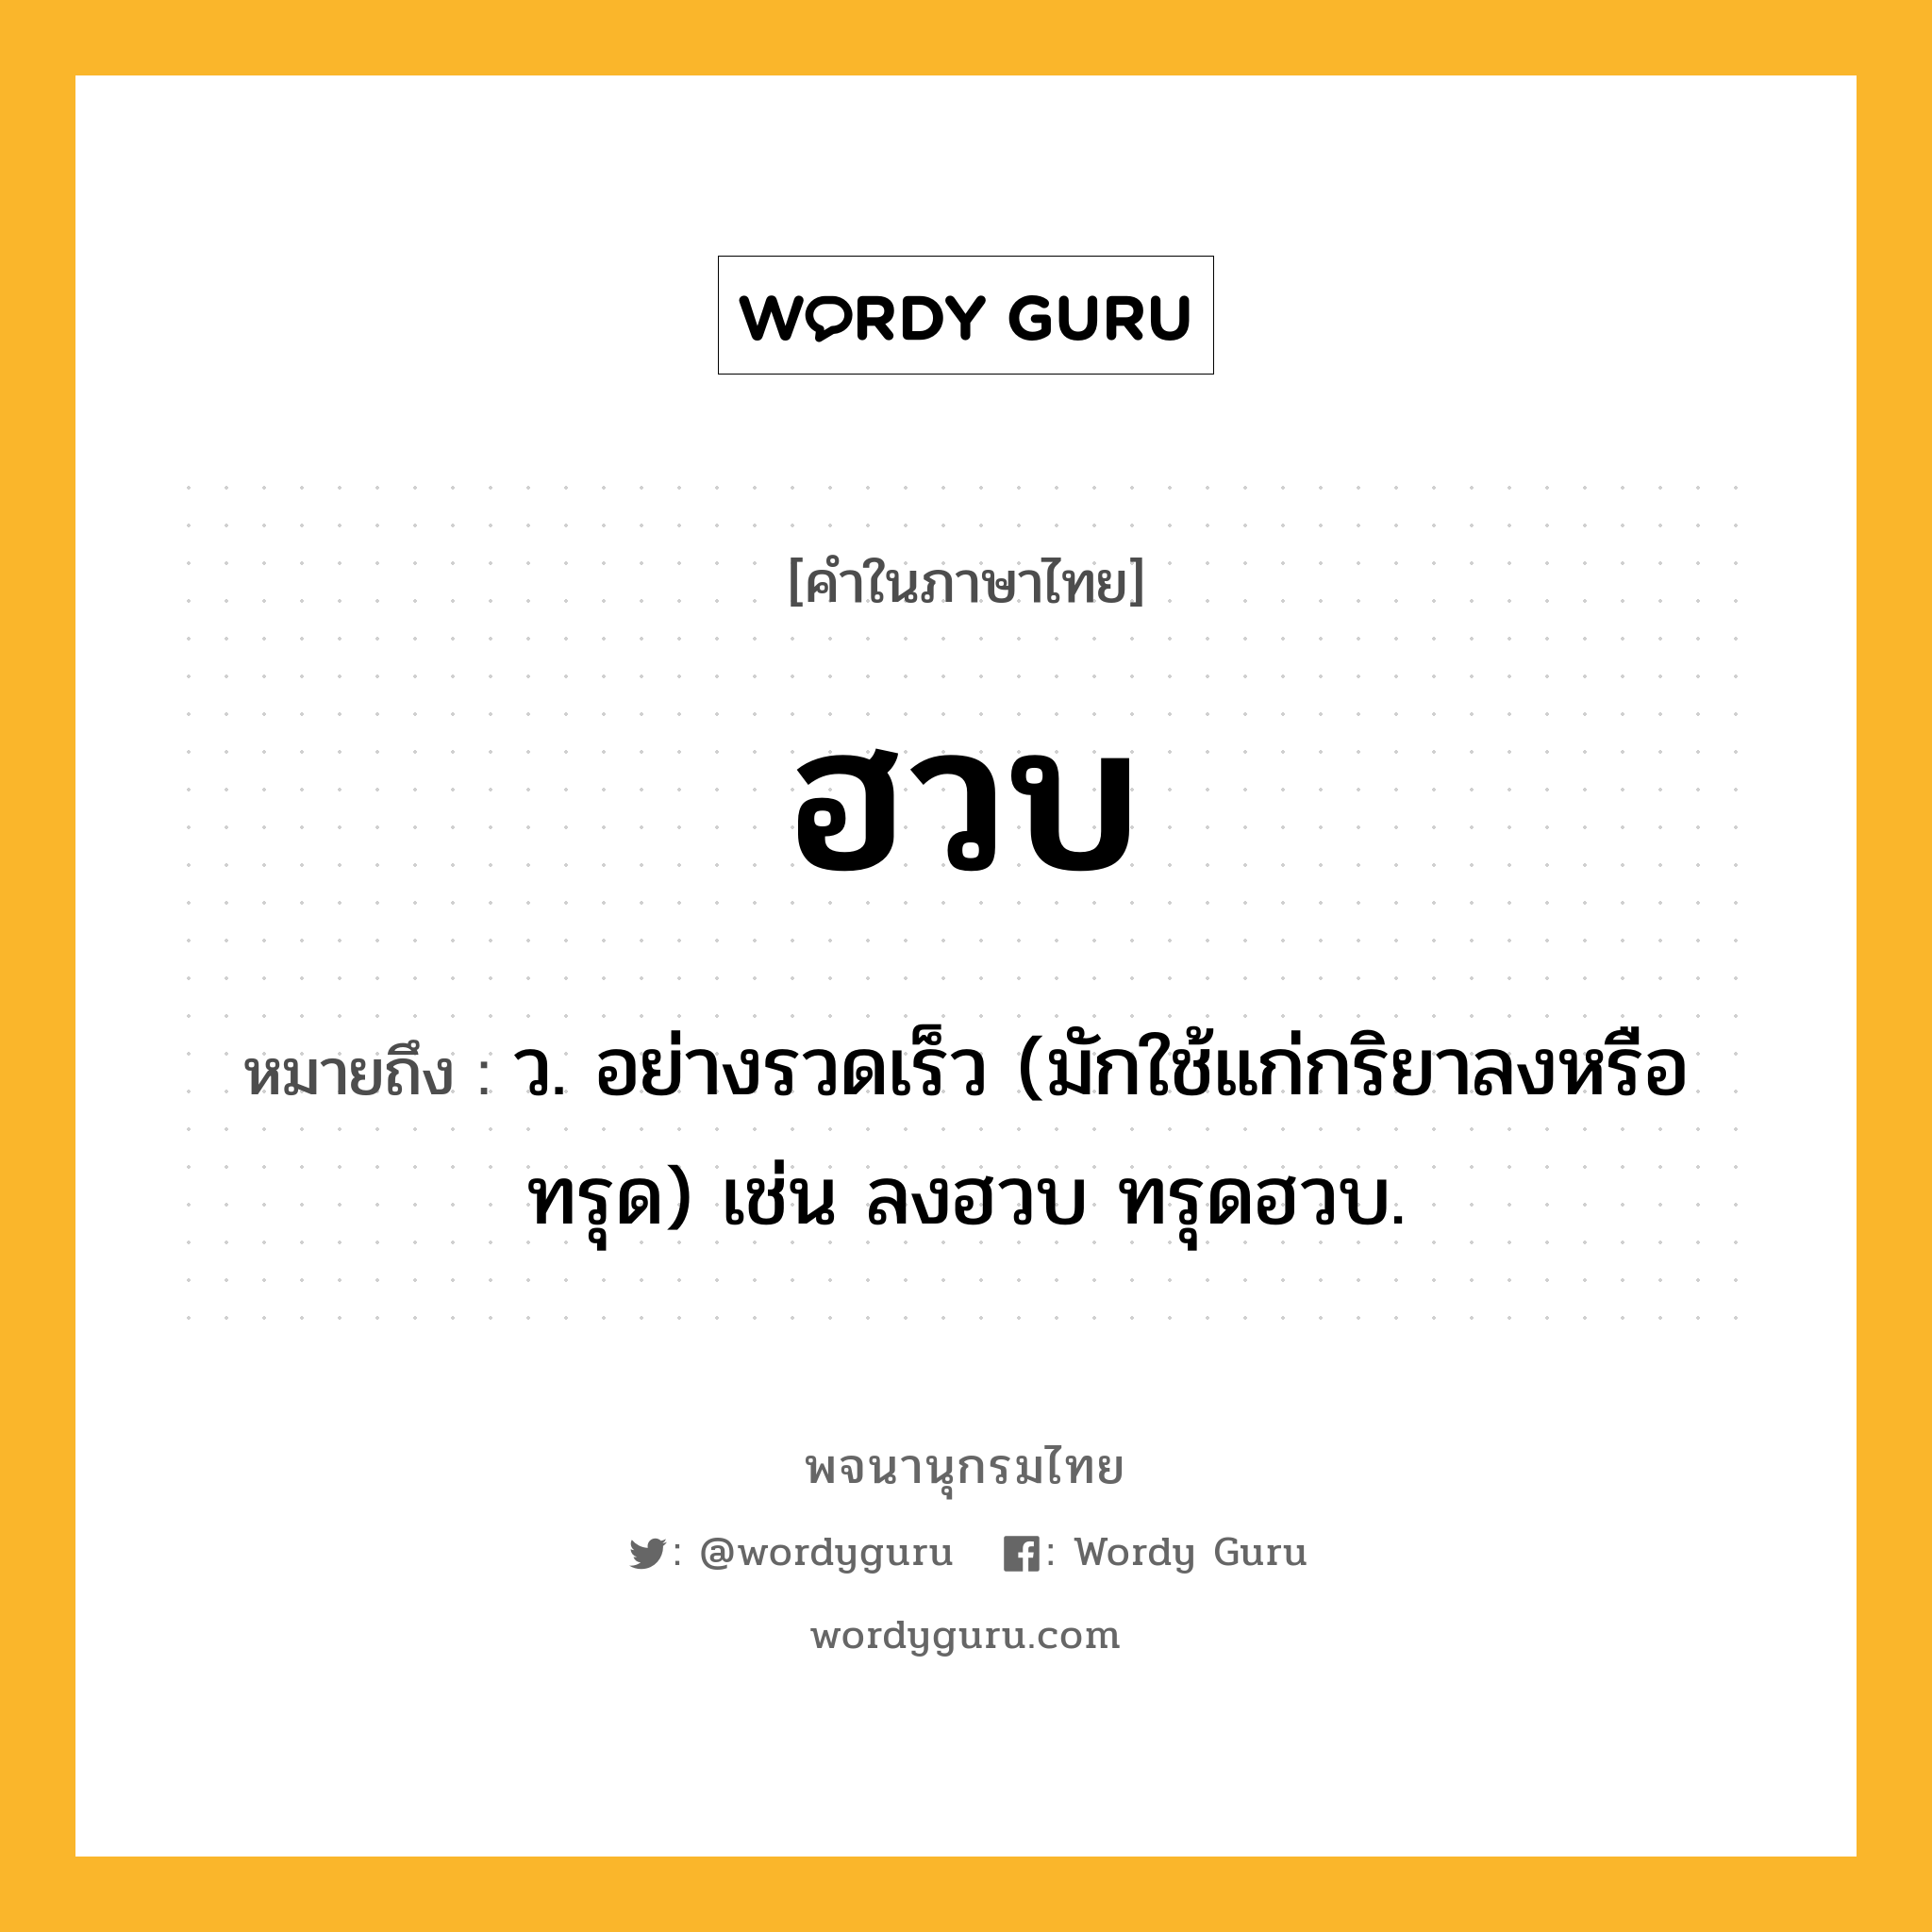 ฮวบ หมายถึงอะไร?, คำในภาษาไทย ฮวบ หมายถึง ว. อย่างรวดเร็ว (มักใช้แก่กริยาลงหรือทรุด) เช่น ลงฮวบ ทรุดฮวบ.